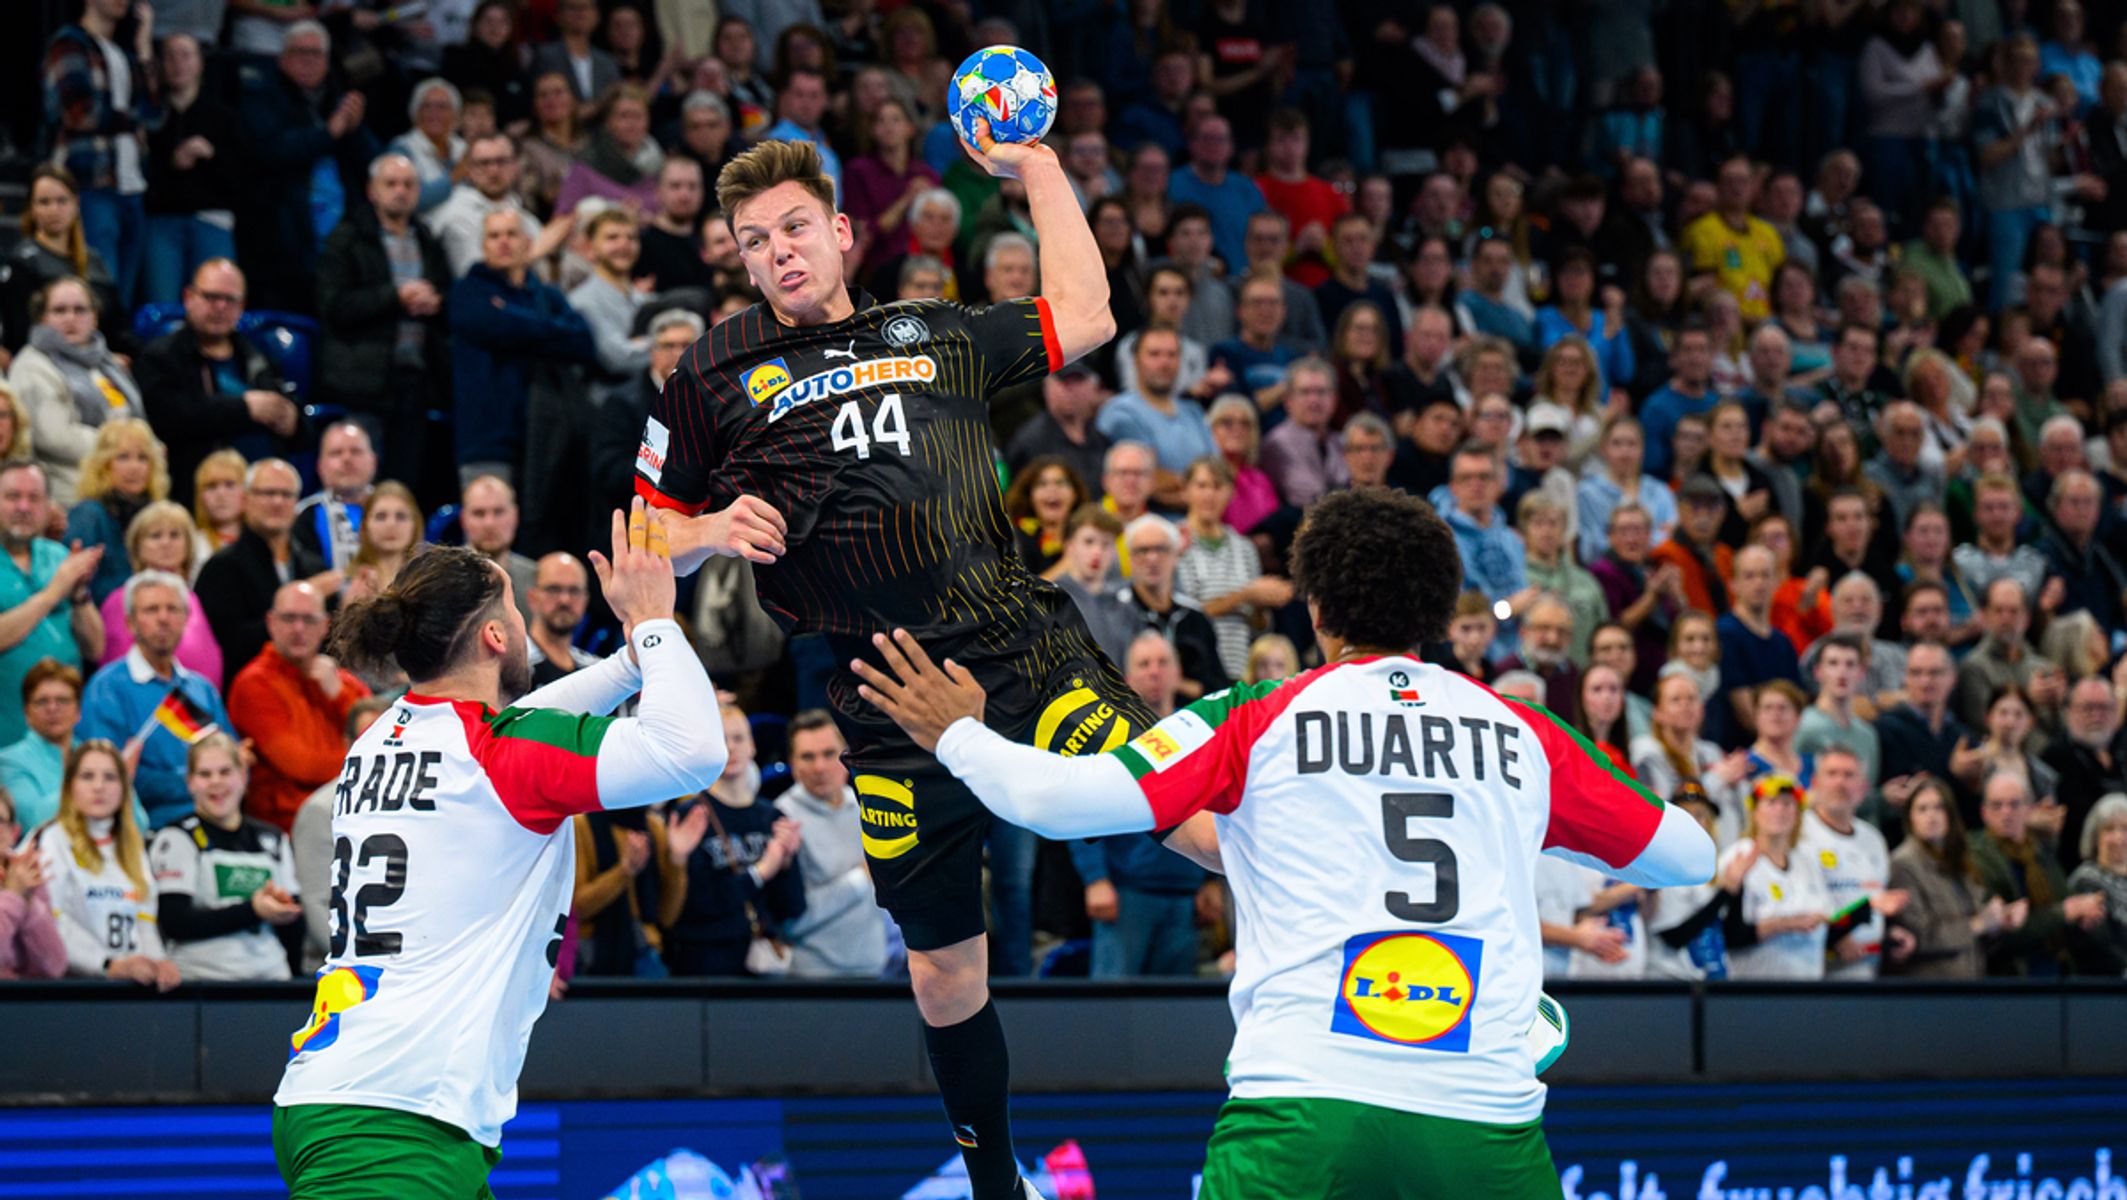 Handball - Deutschland gewinnt letztes Testspiel - EM-Aus für Groetzki